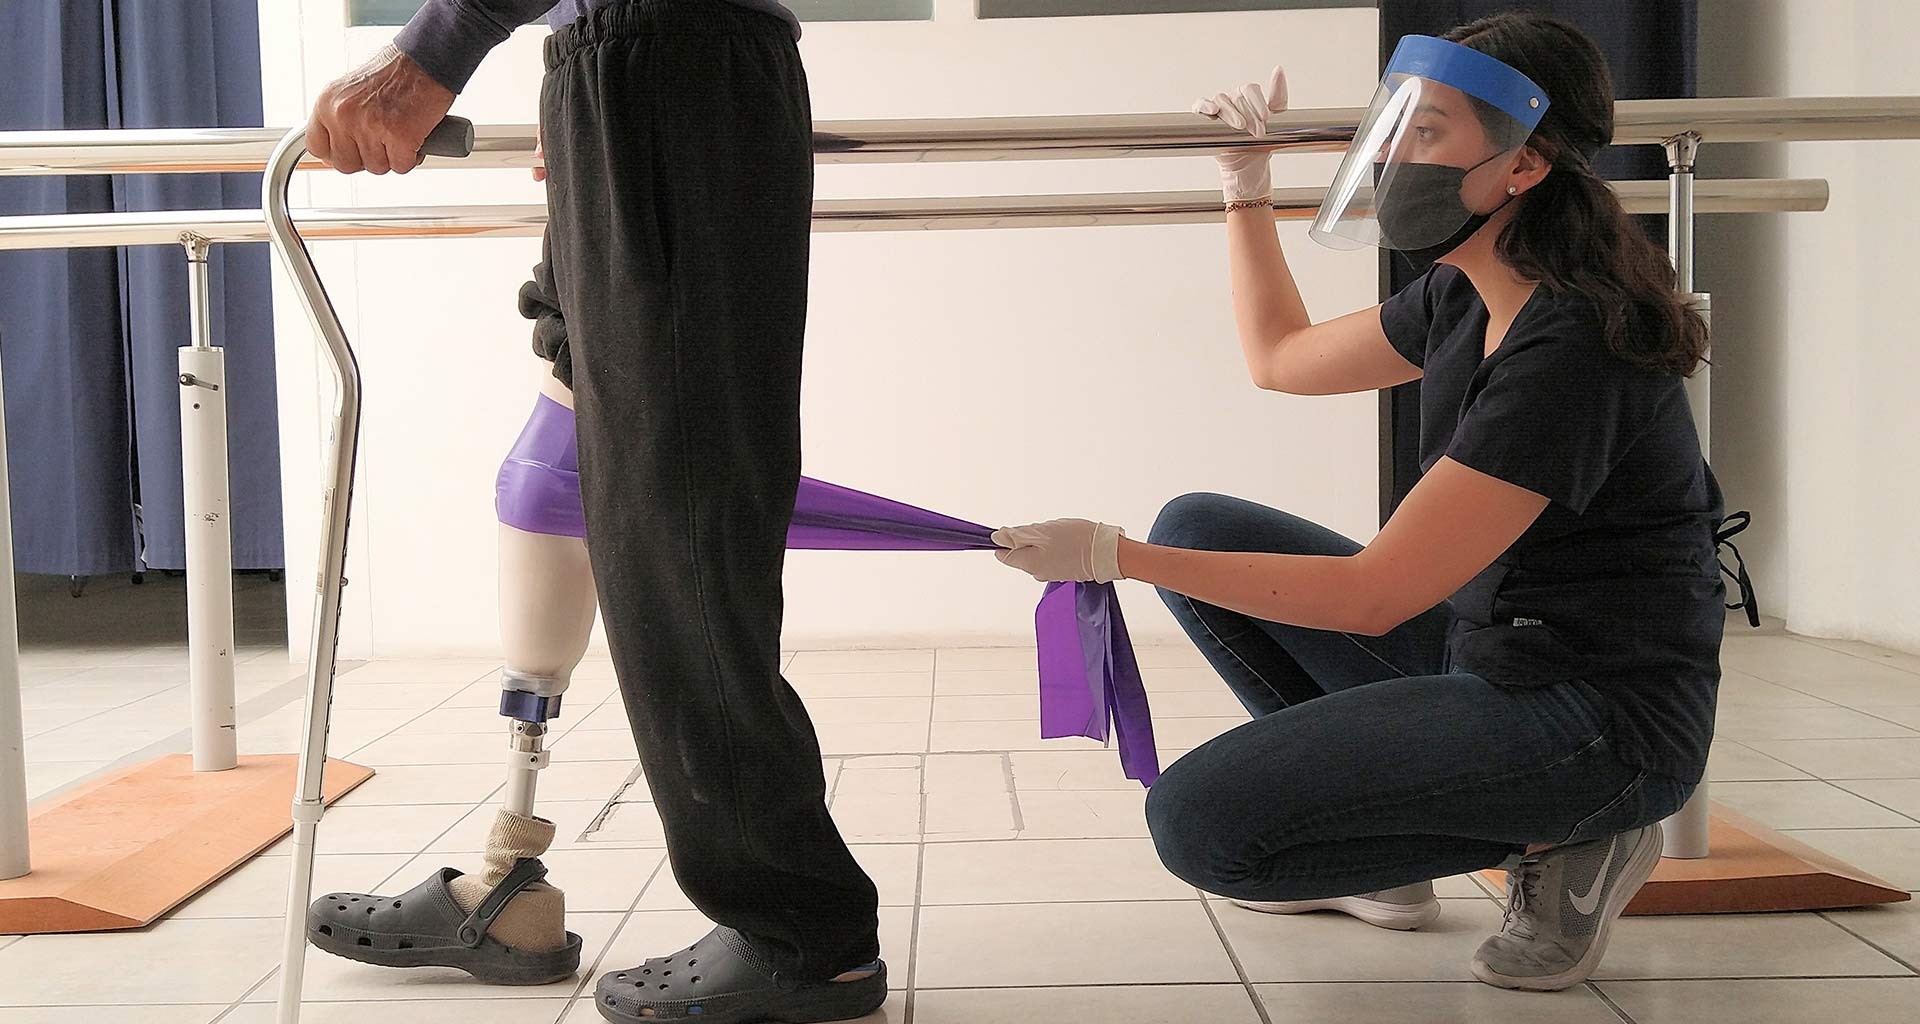  Proactible ayuda a los pacientes a volver a caminar de forma económicamente accesible